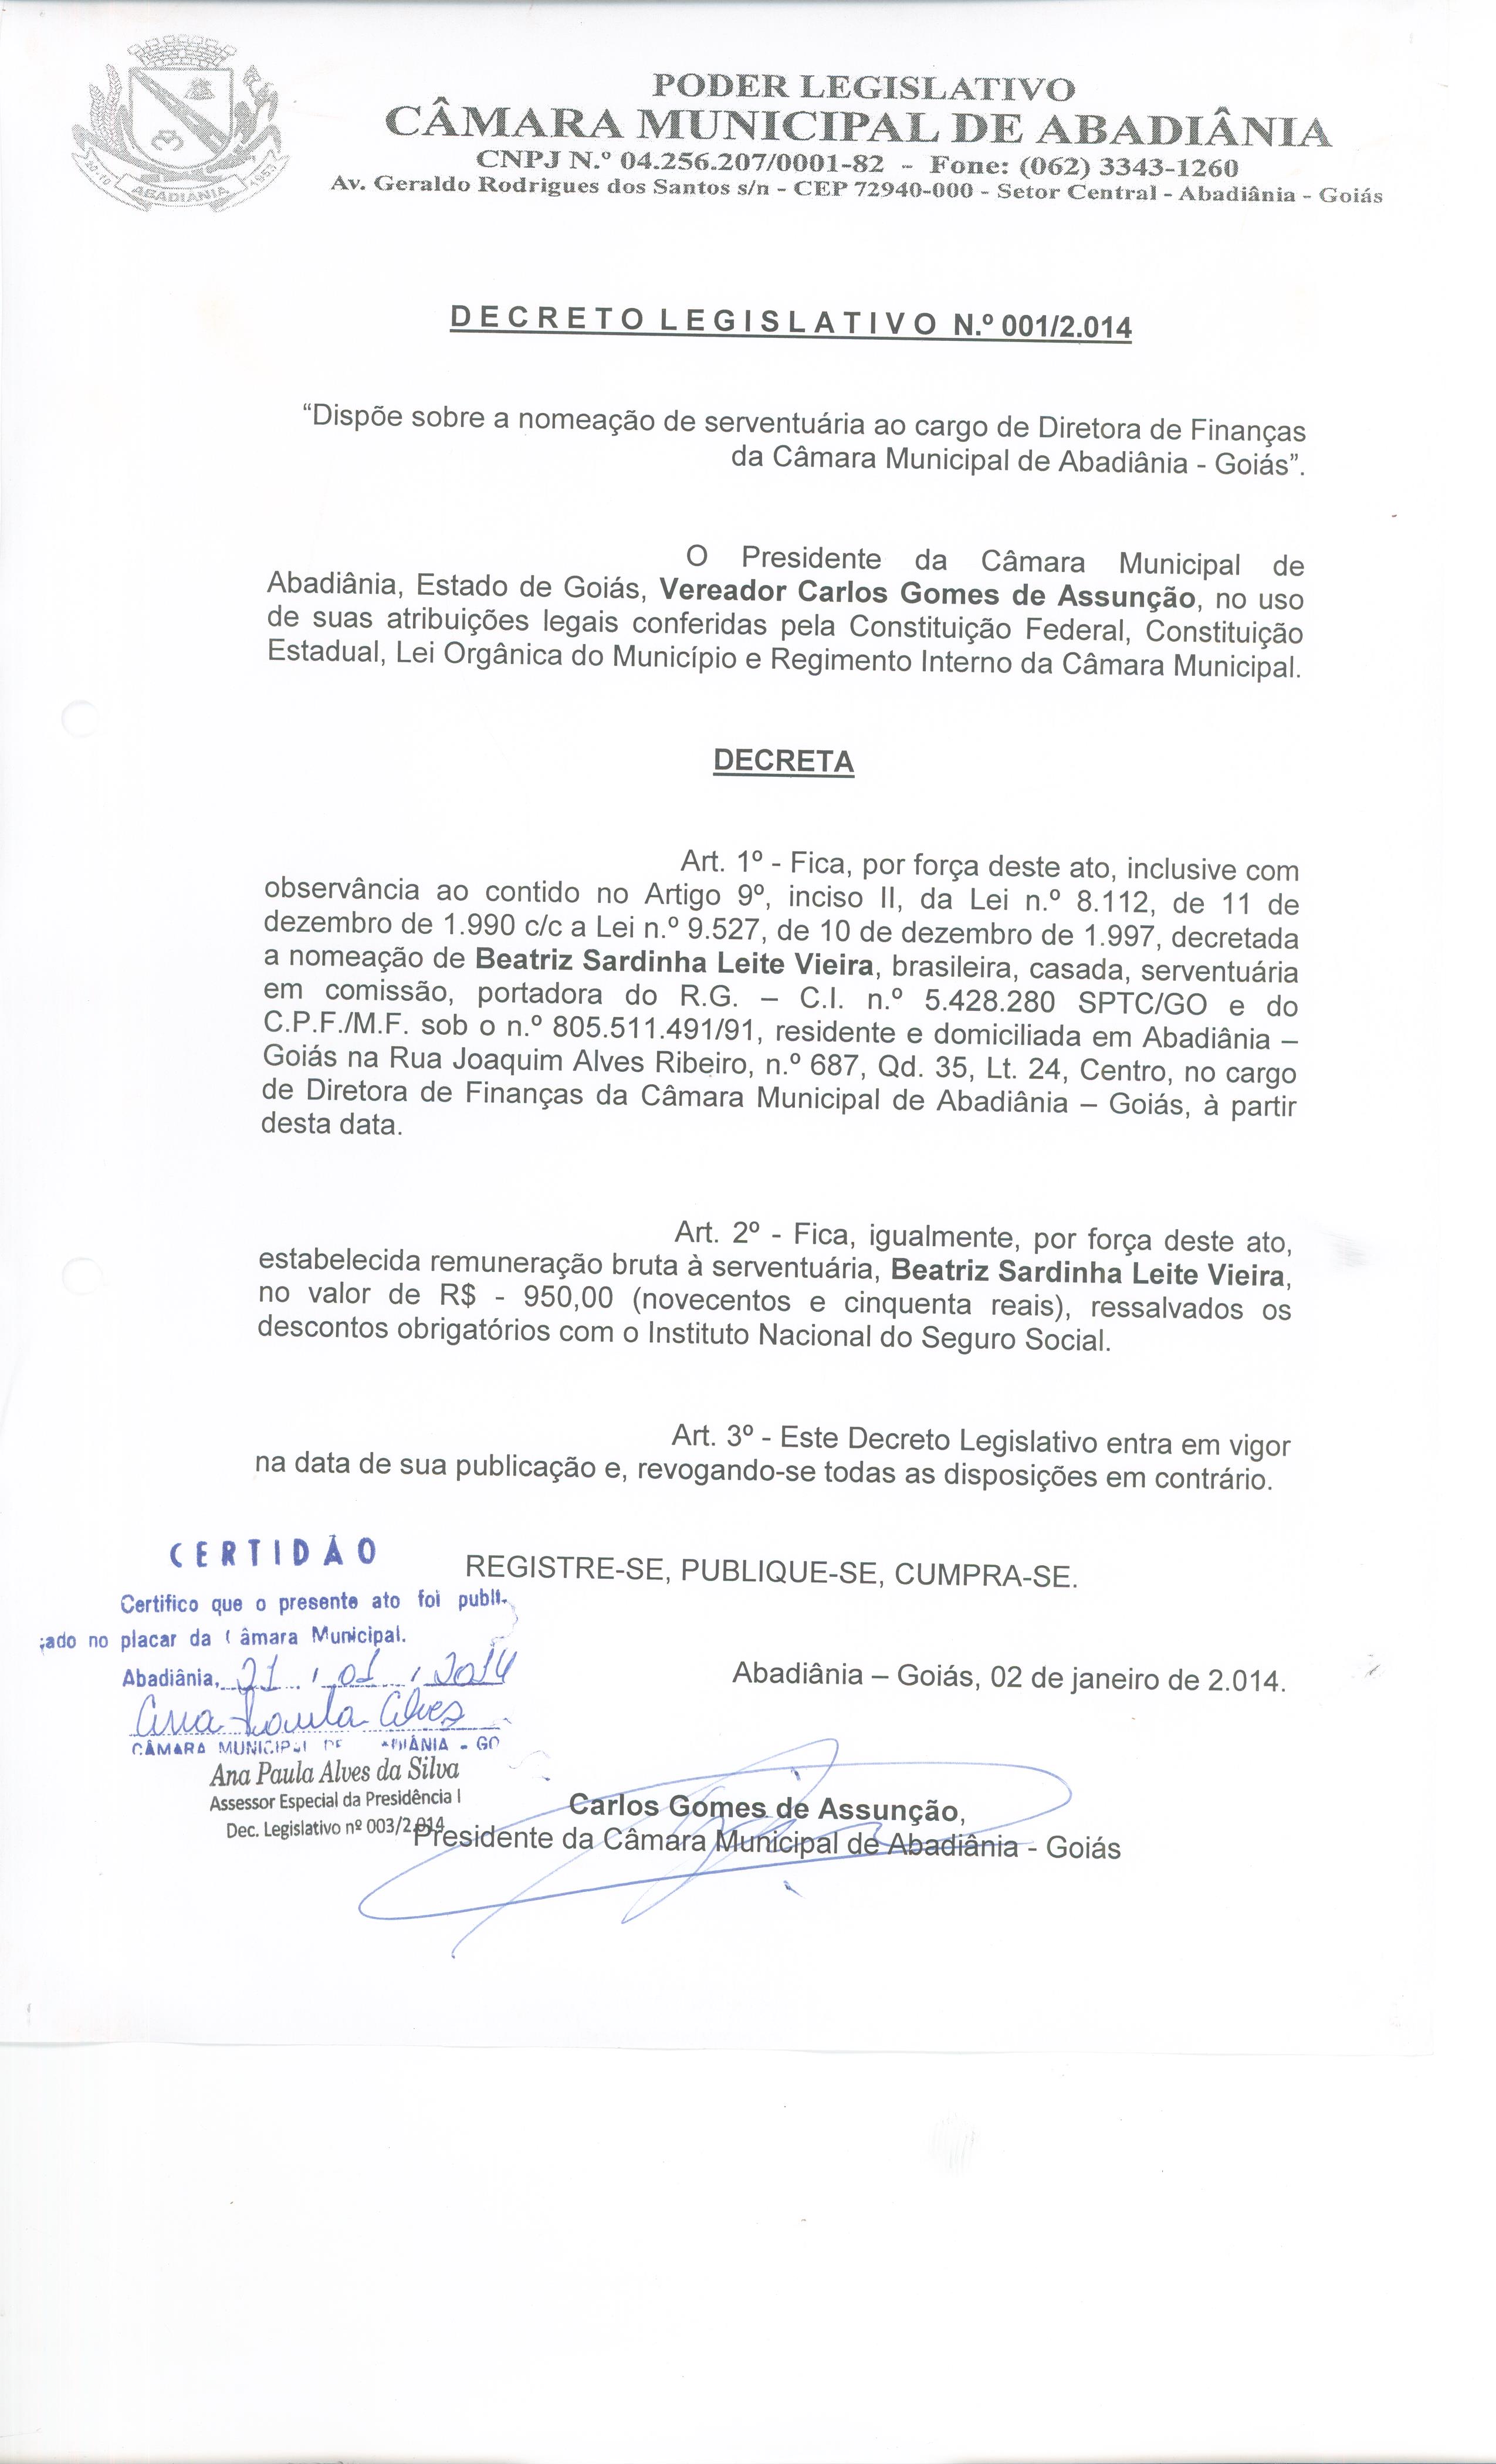 Decreto Legislativo n° 001-2014